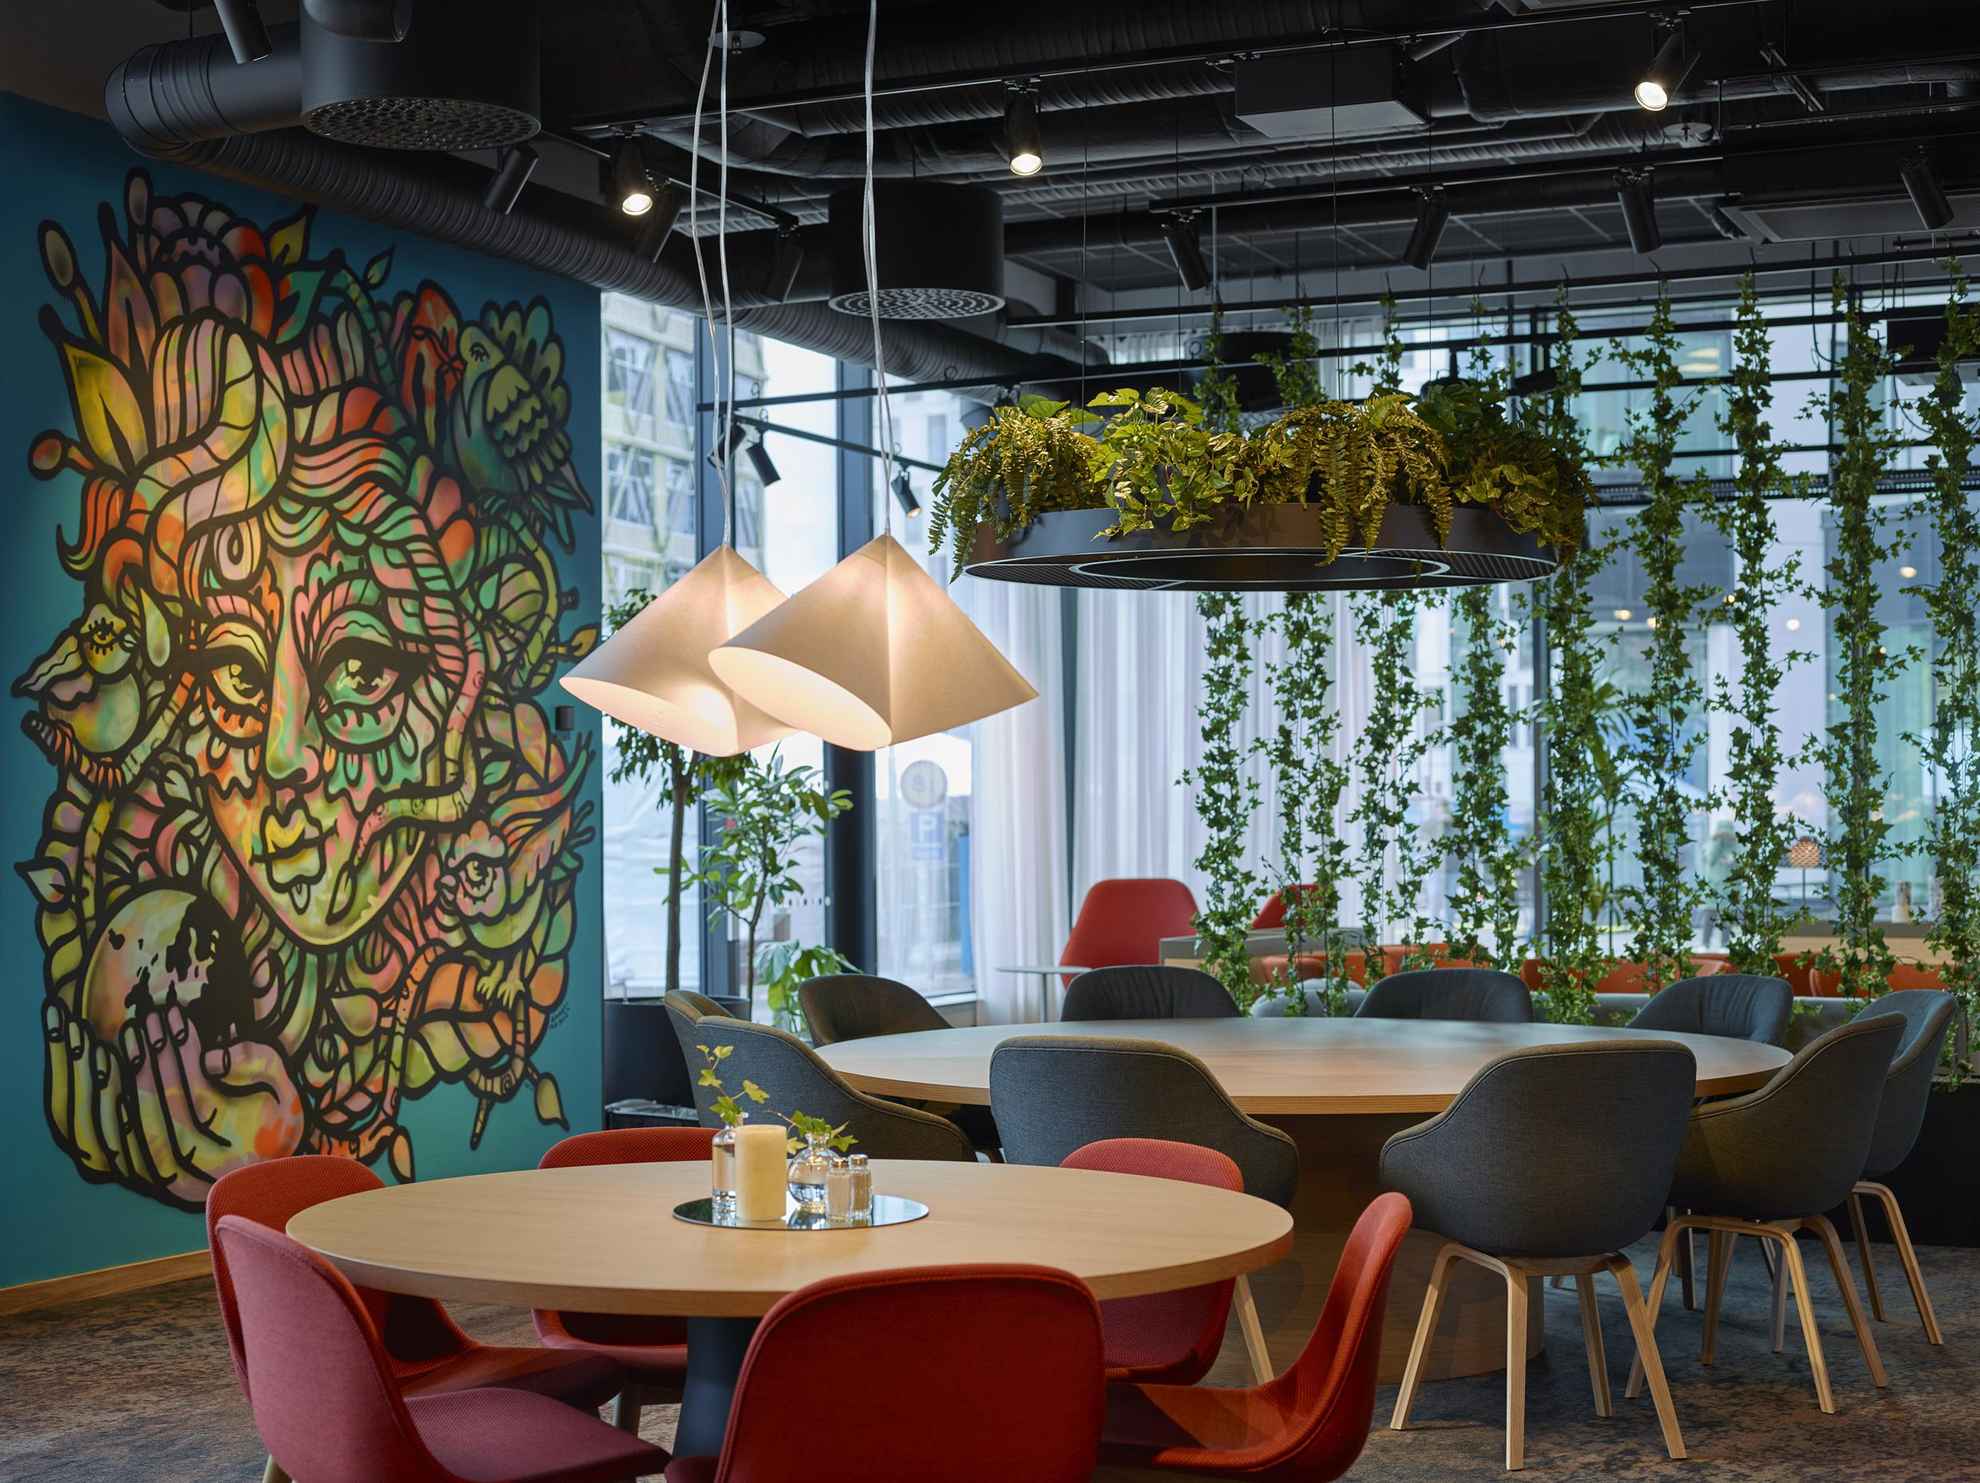 Une pièce avec des tables rondes en bois et des chaises noires et rouges. Des plantes sont suspendues au plafond et sur la gauche de la photo une oeuvre a été peinte sur un mur bleu.